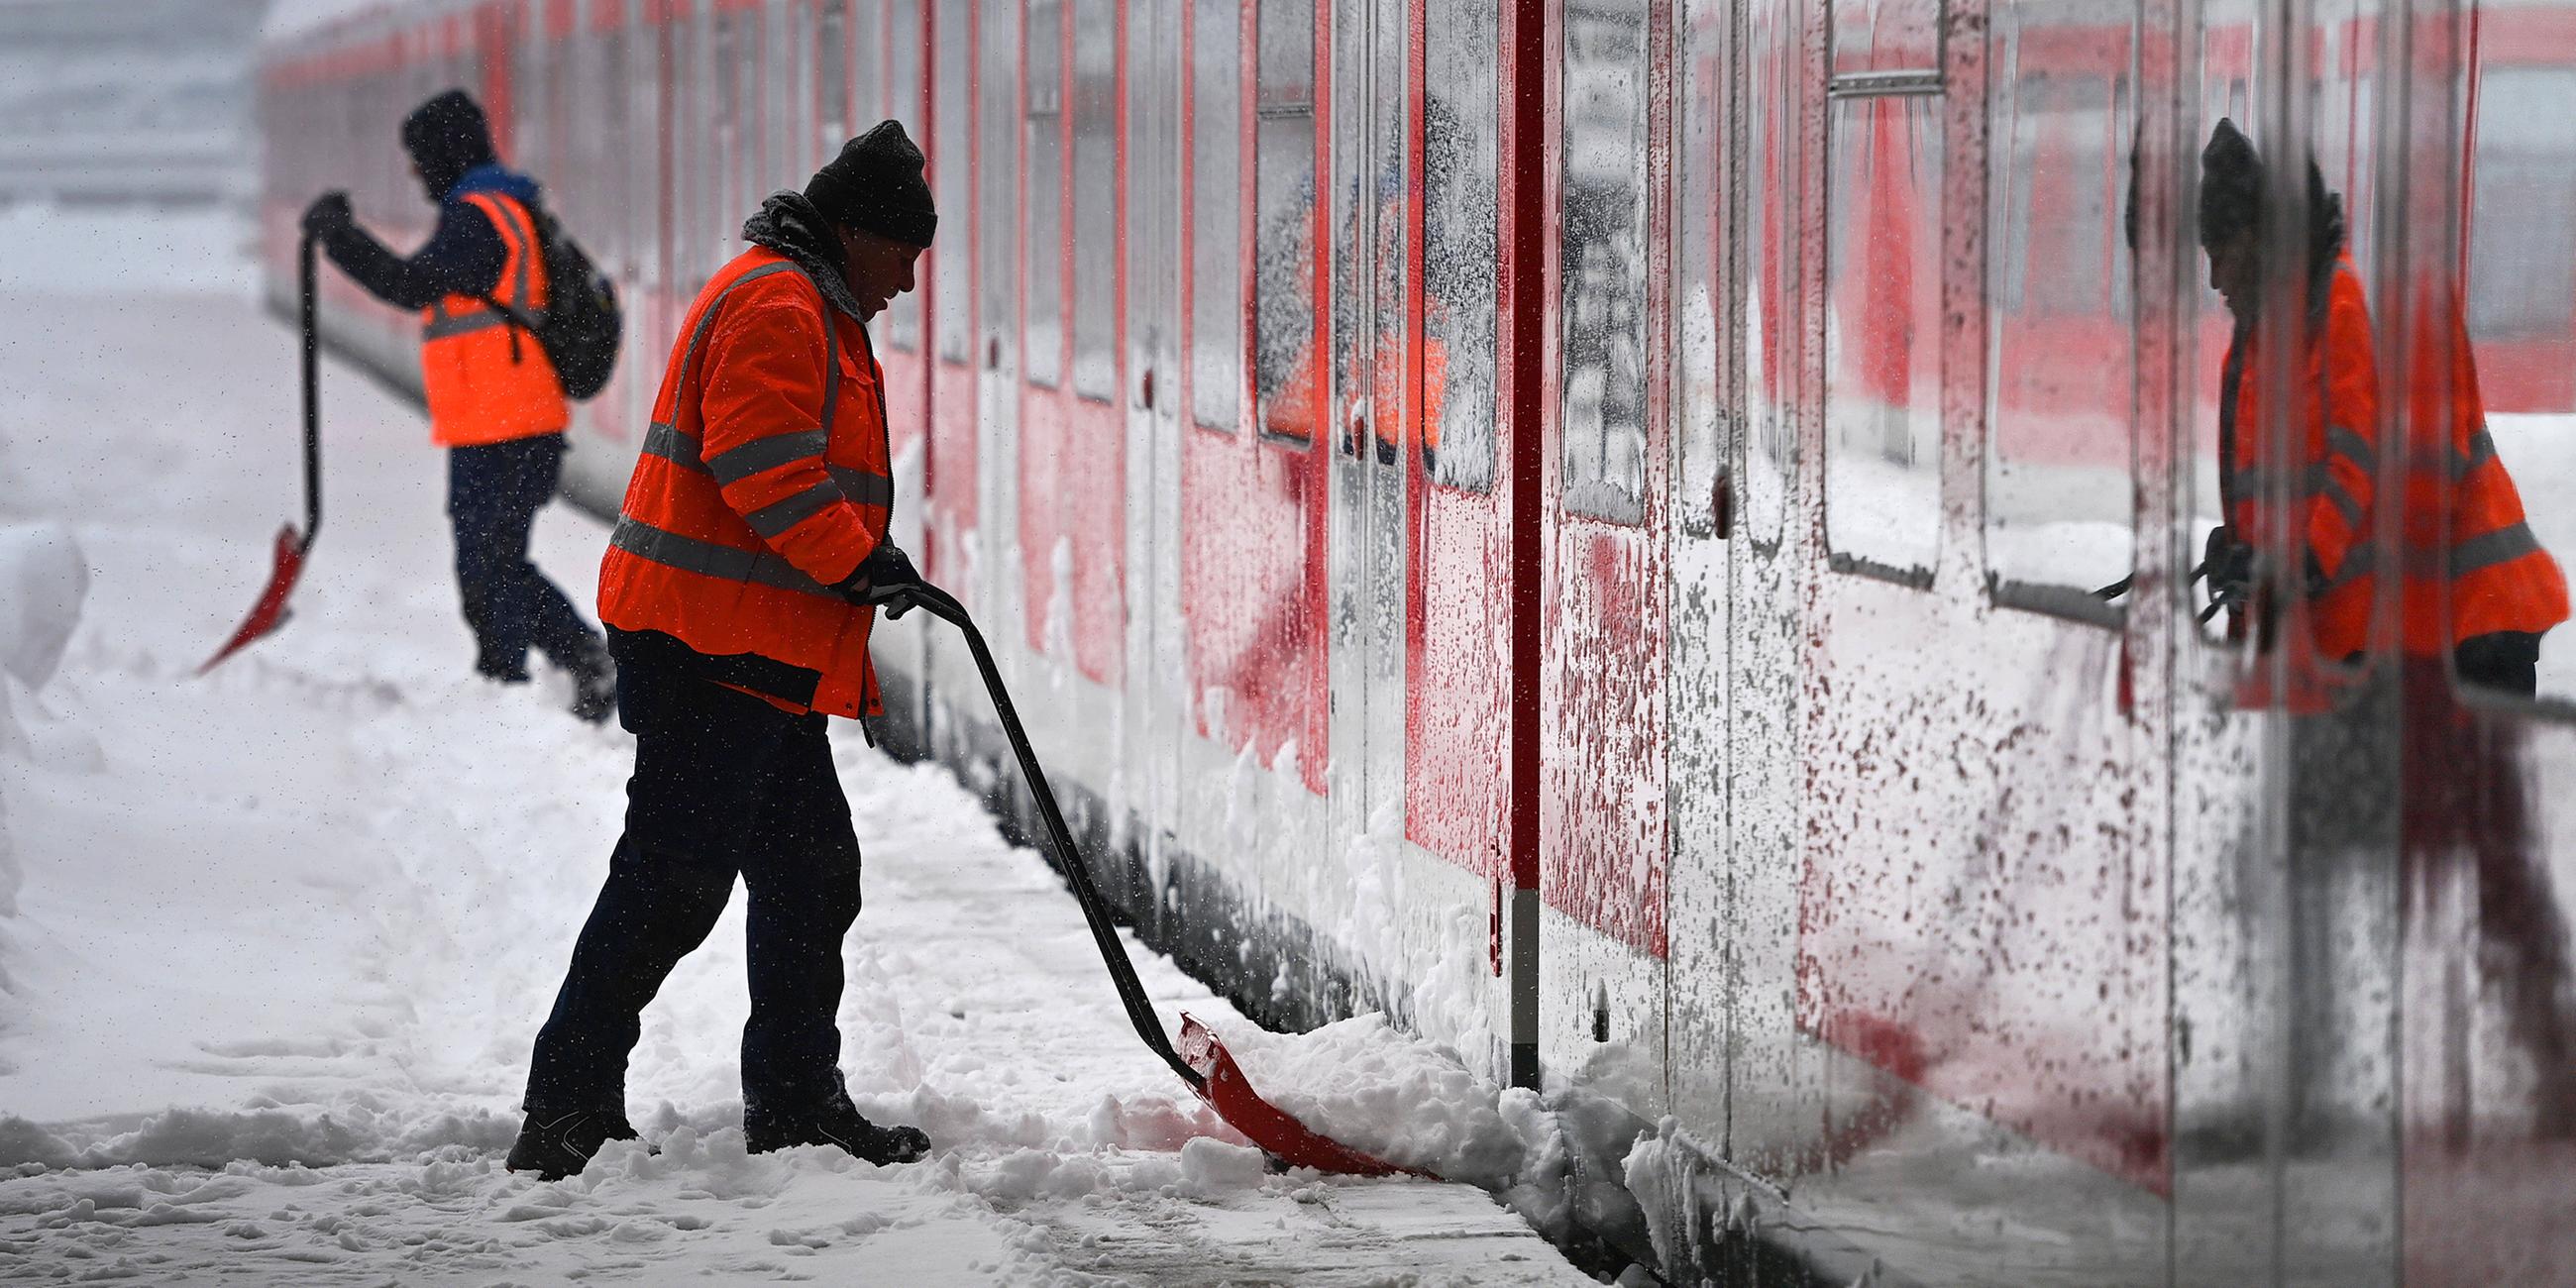 Arbeiter räumt vor einem S-Bahn Zug auf einem Bahnsteig Schnee